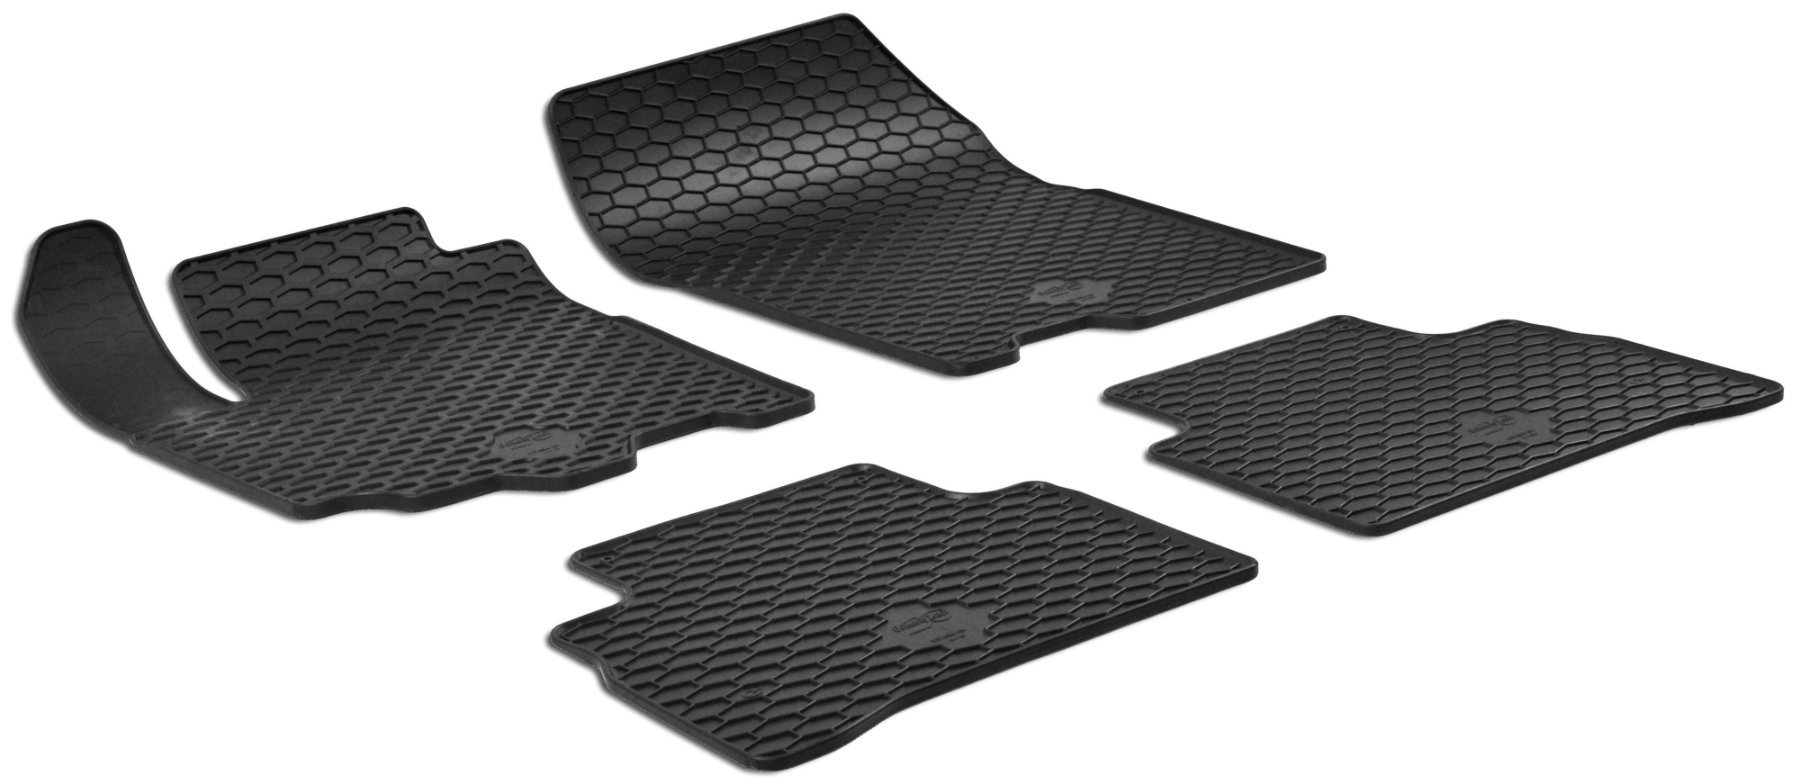 Rubber mats DirtGuard for Suzuki Vitara 02/2015-Today